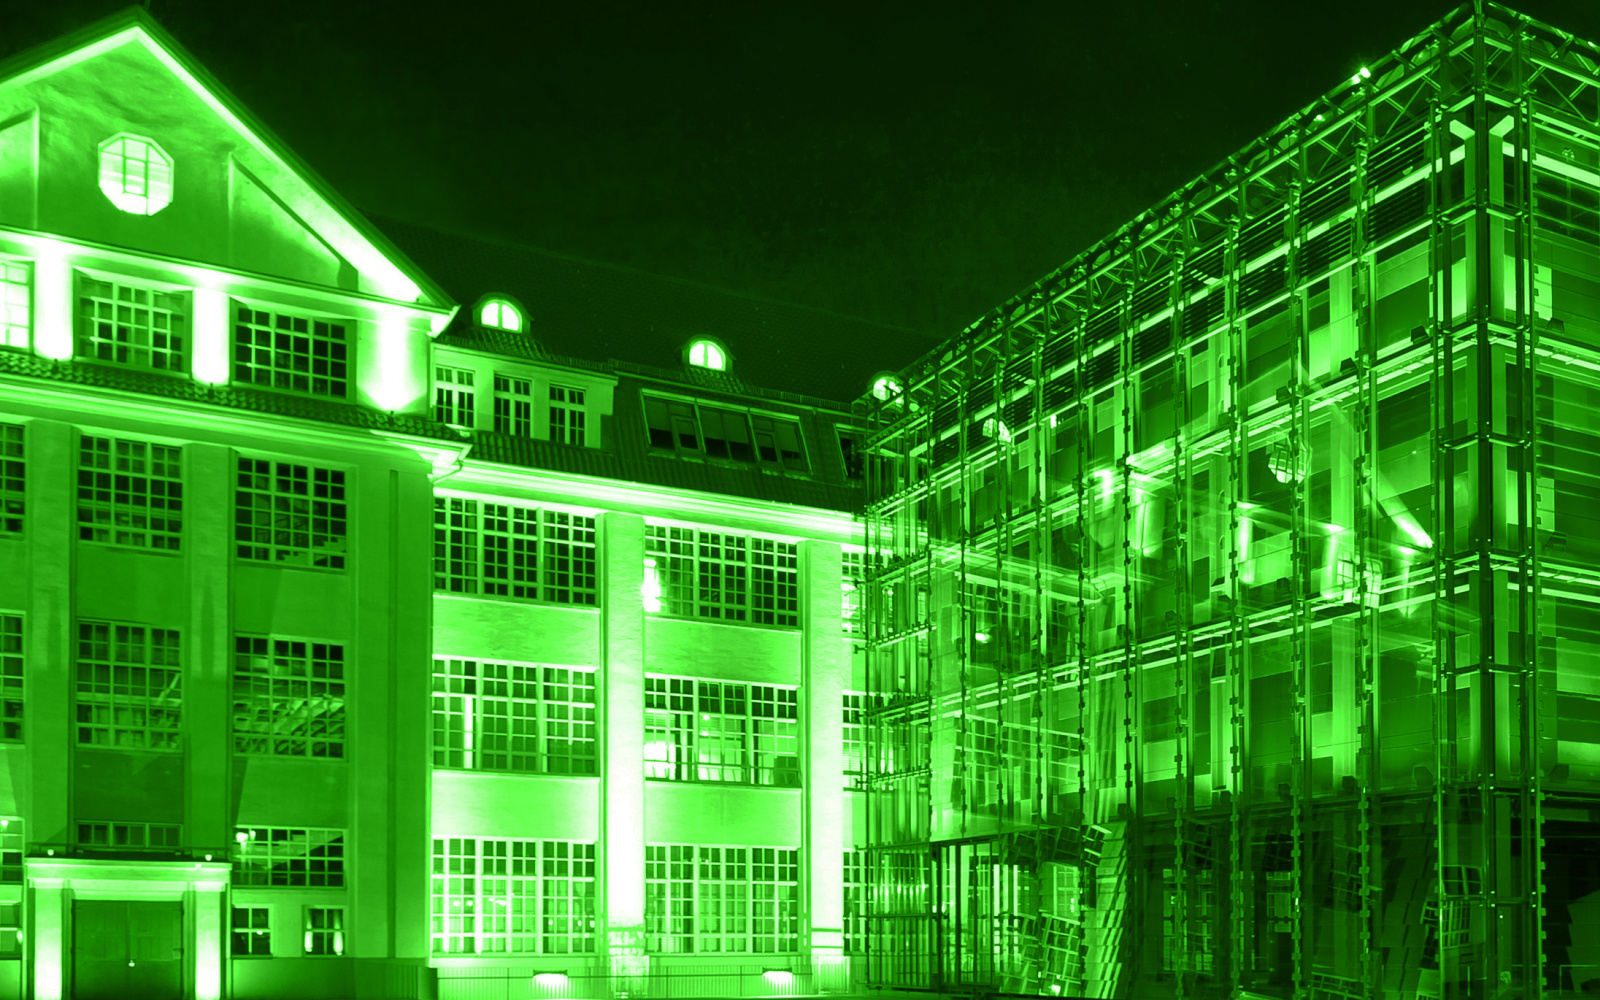 Grün eingefärbte Abbildung des ZKM mit Cubus im Vordergrund